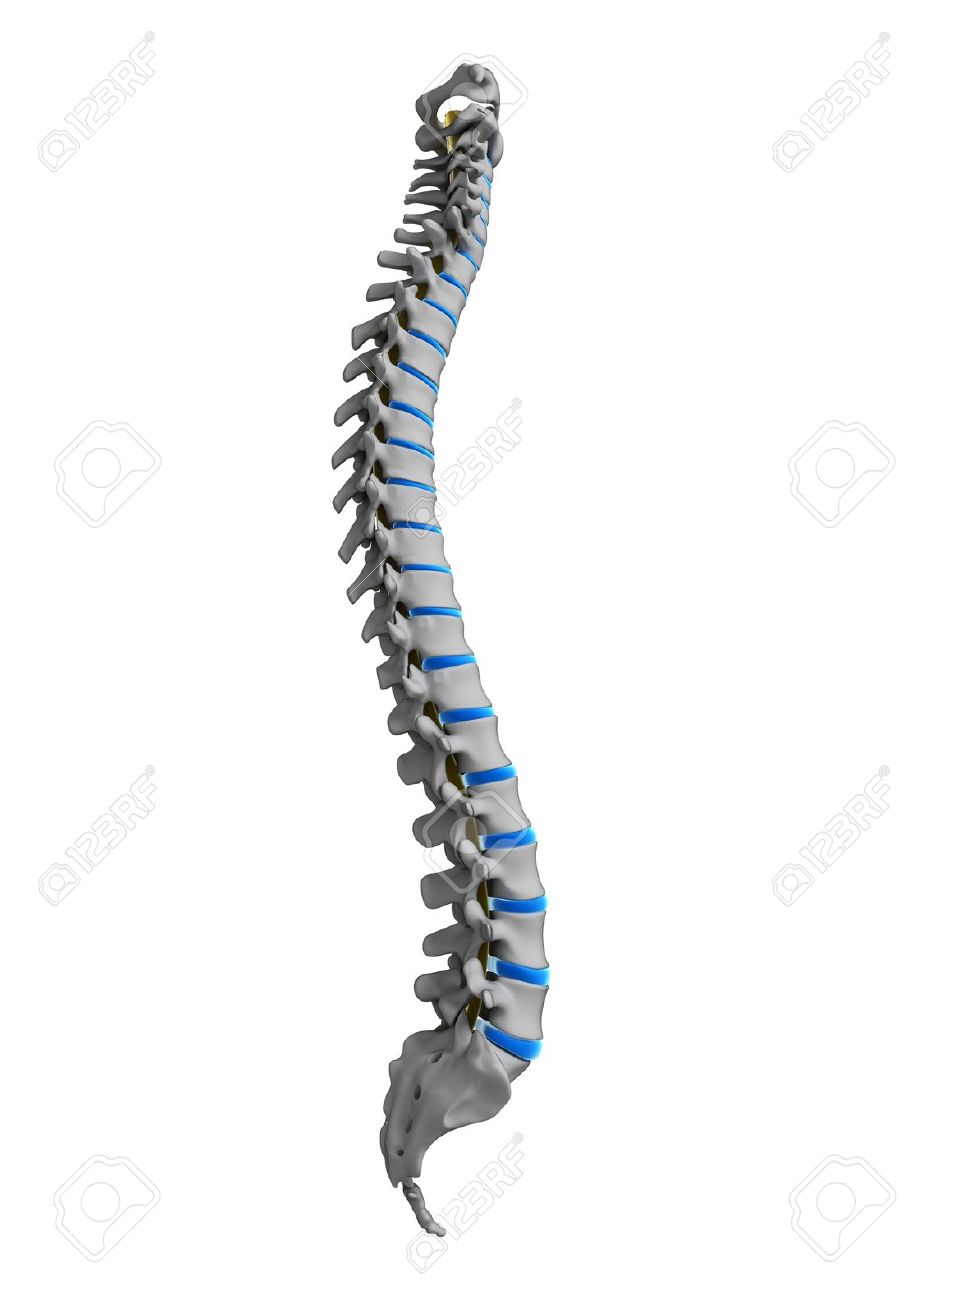 18070292 3d rendered illustration human spine Stock Illustration spine spinal column%20(1)